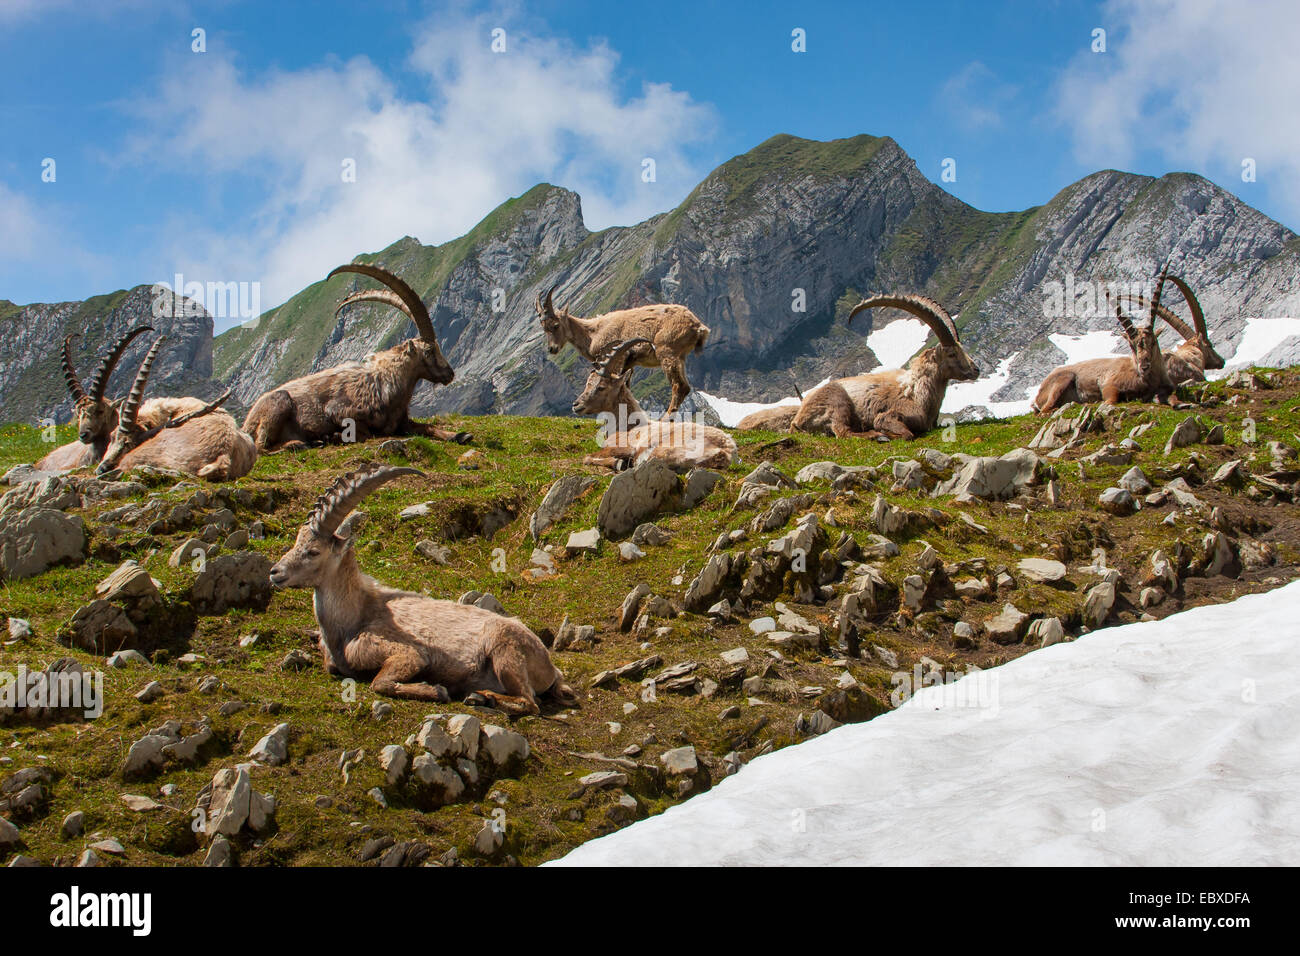 Stambecco delle Alpi (Capra ibex, Capra ibex ibex), gruppo di stambecchi in appoggio nella parte anteriore del paesaggio di montagna, Svizzera, Alpstein, Saentis Foto Stock